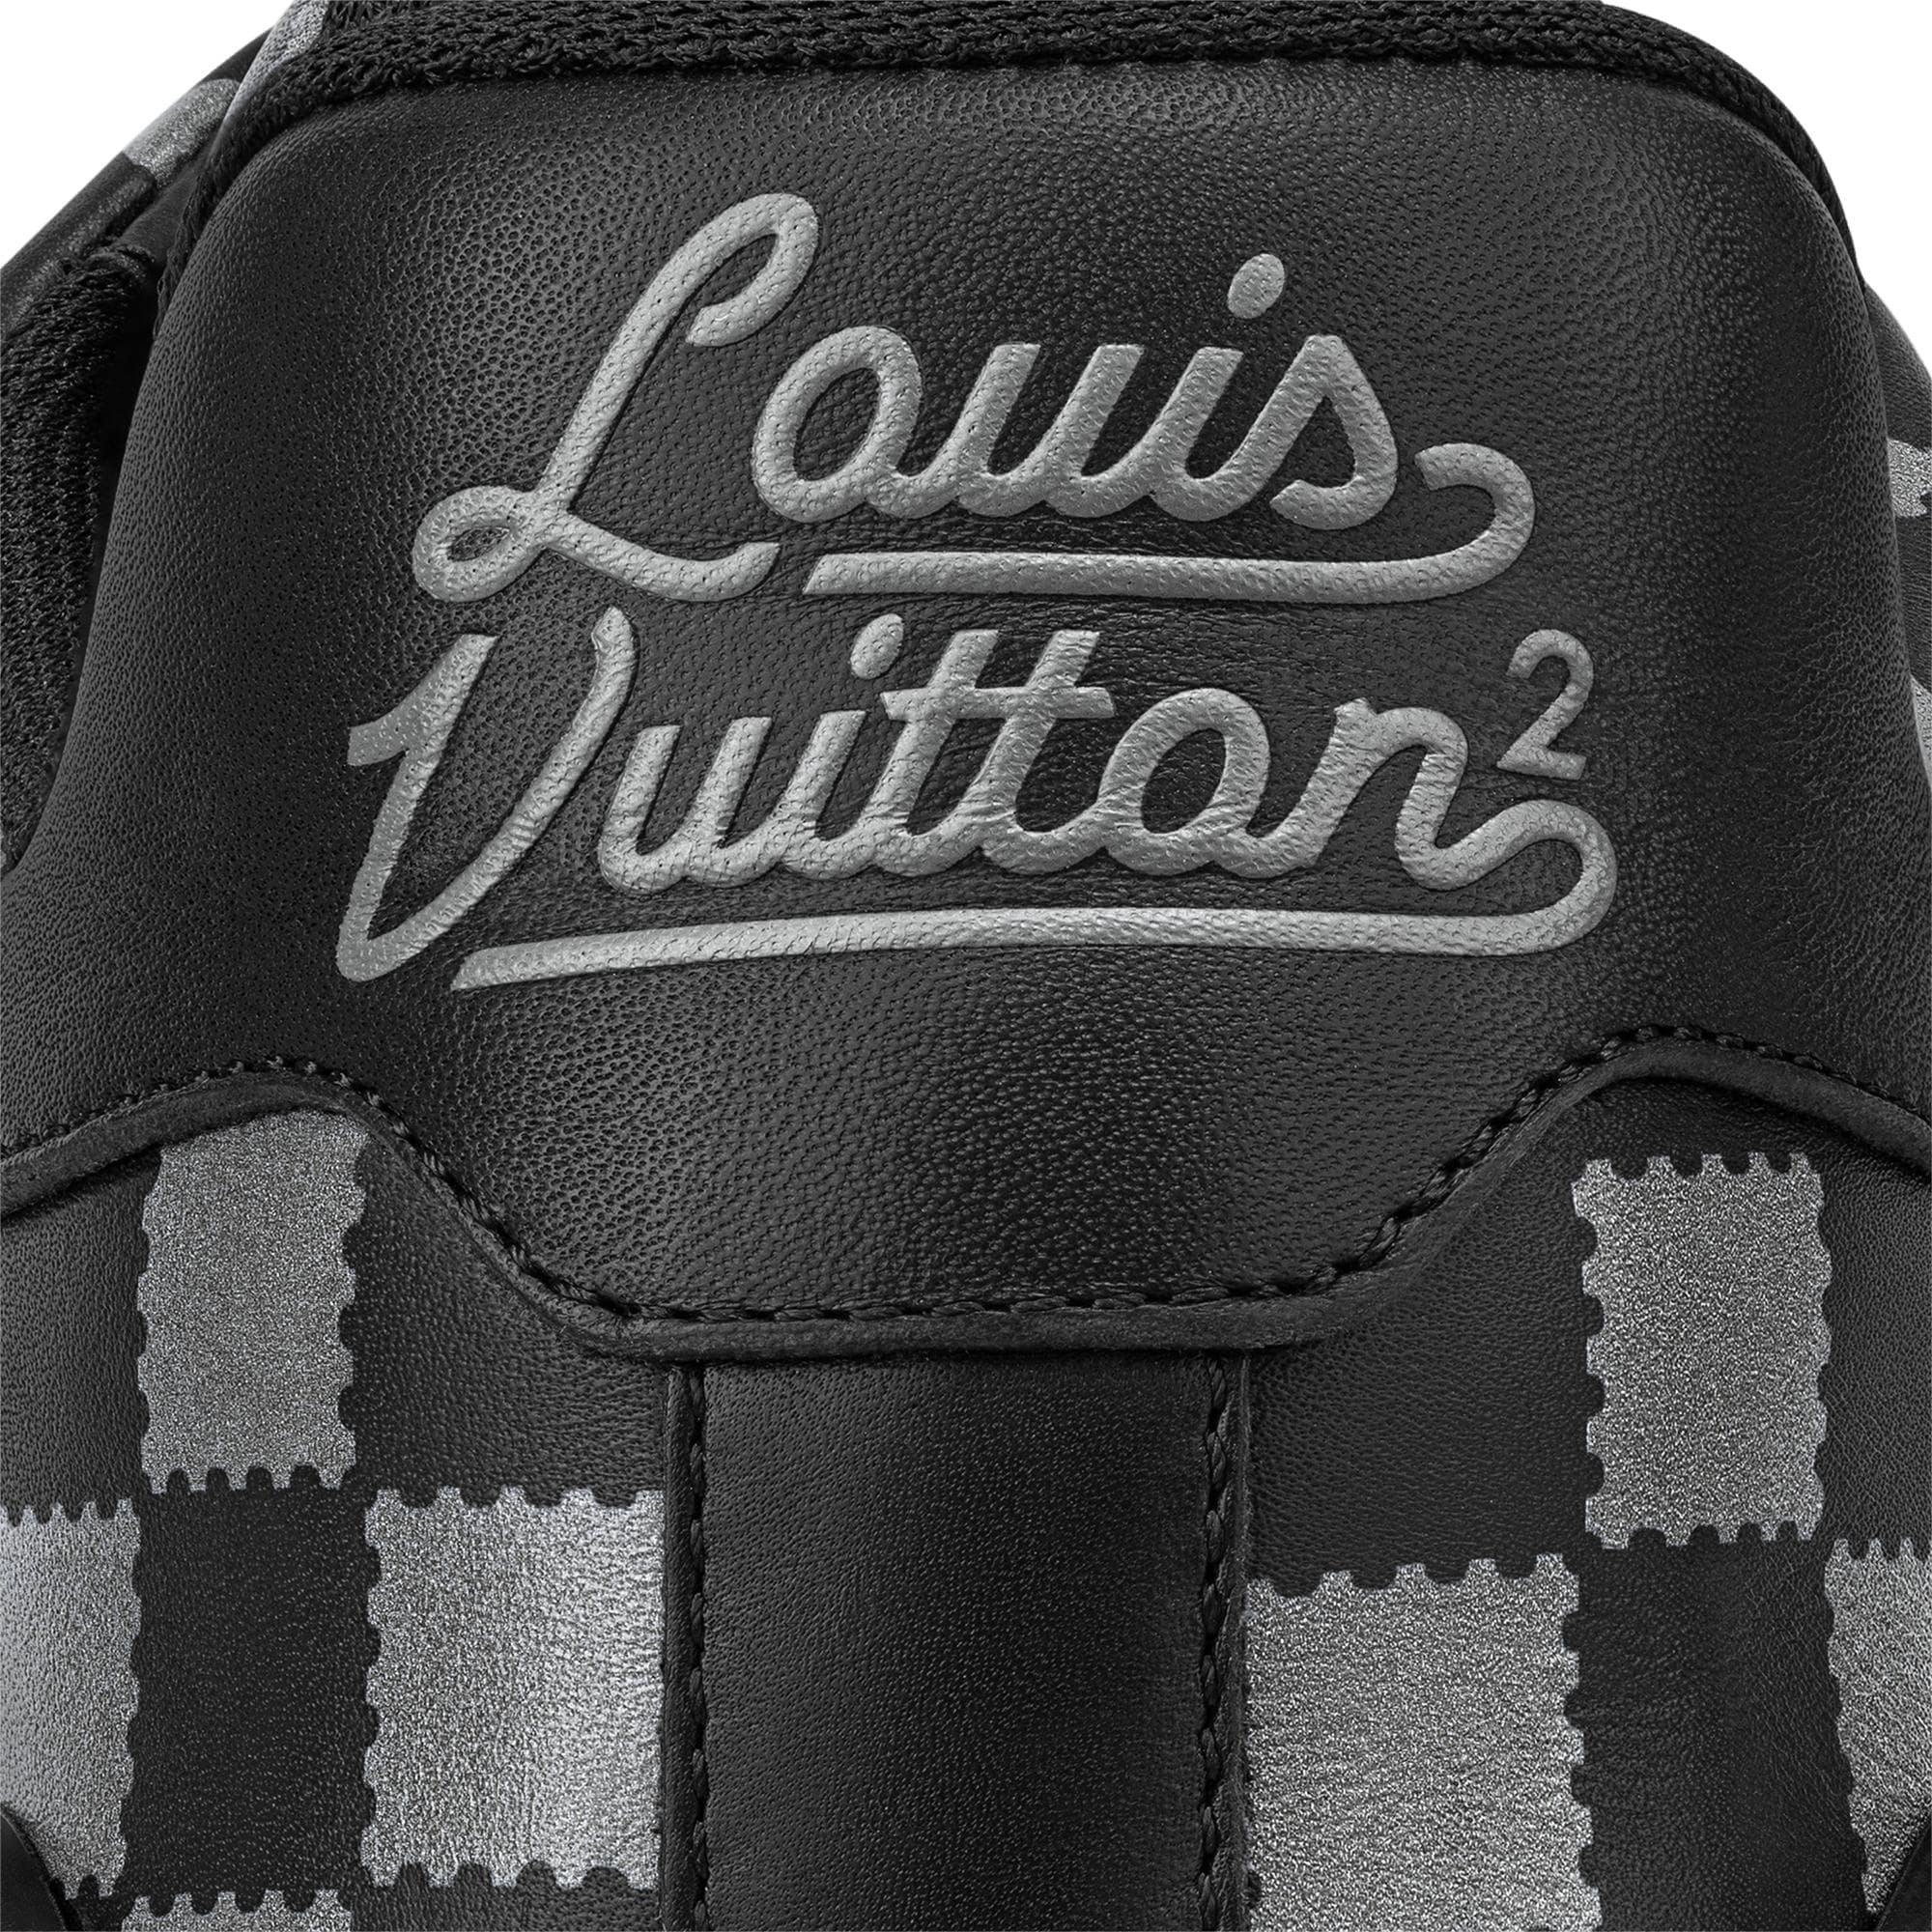 Louis Vuitton LV Trainer Violet Black Men's - 1A9FJO - US